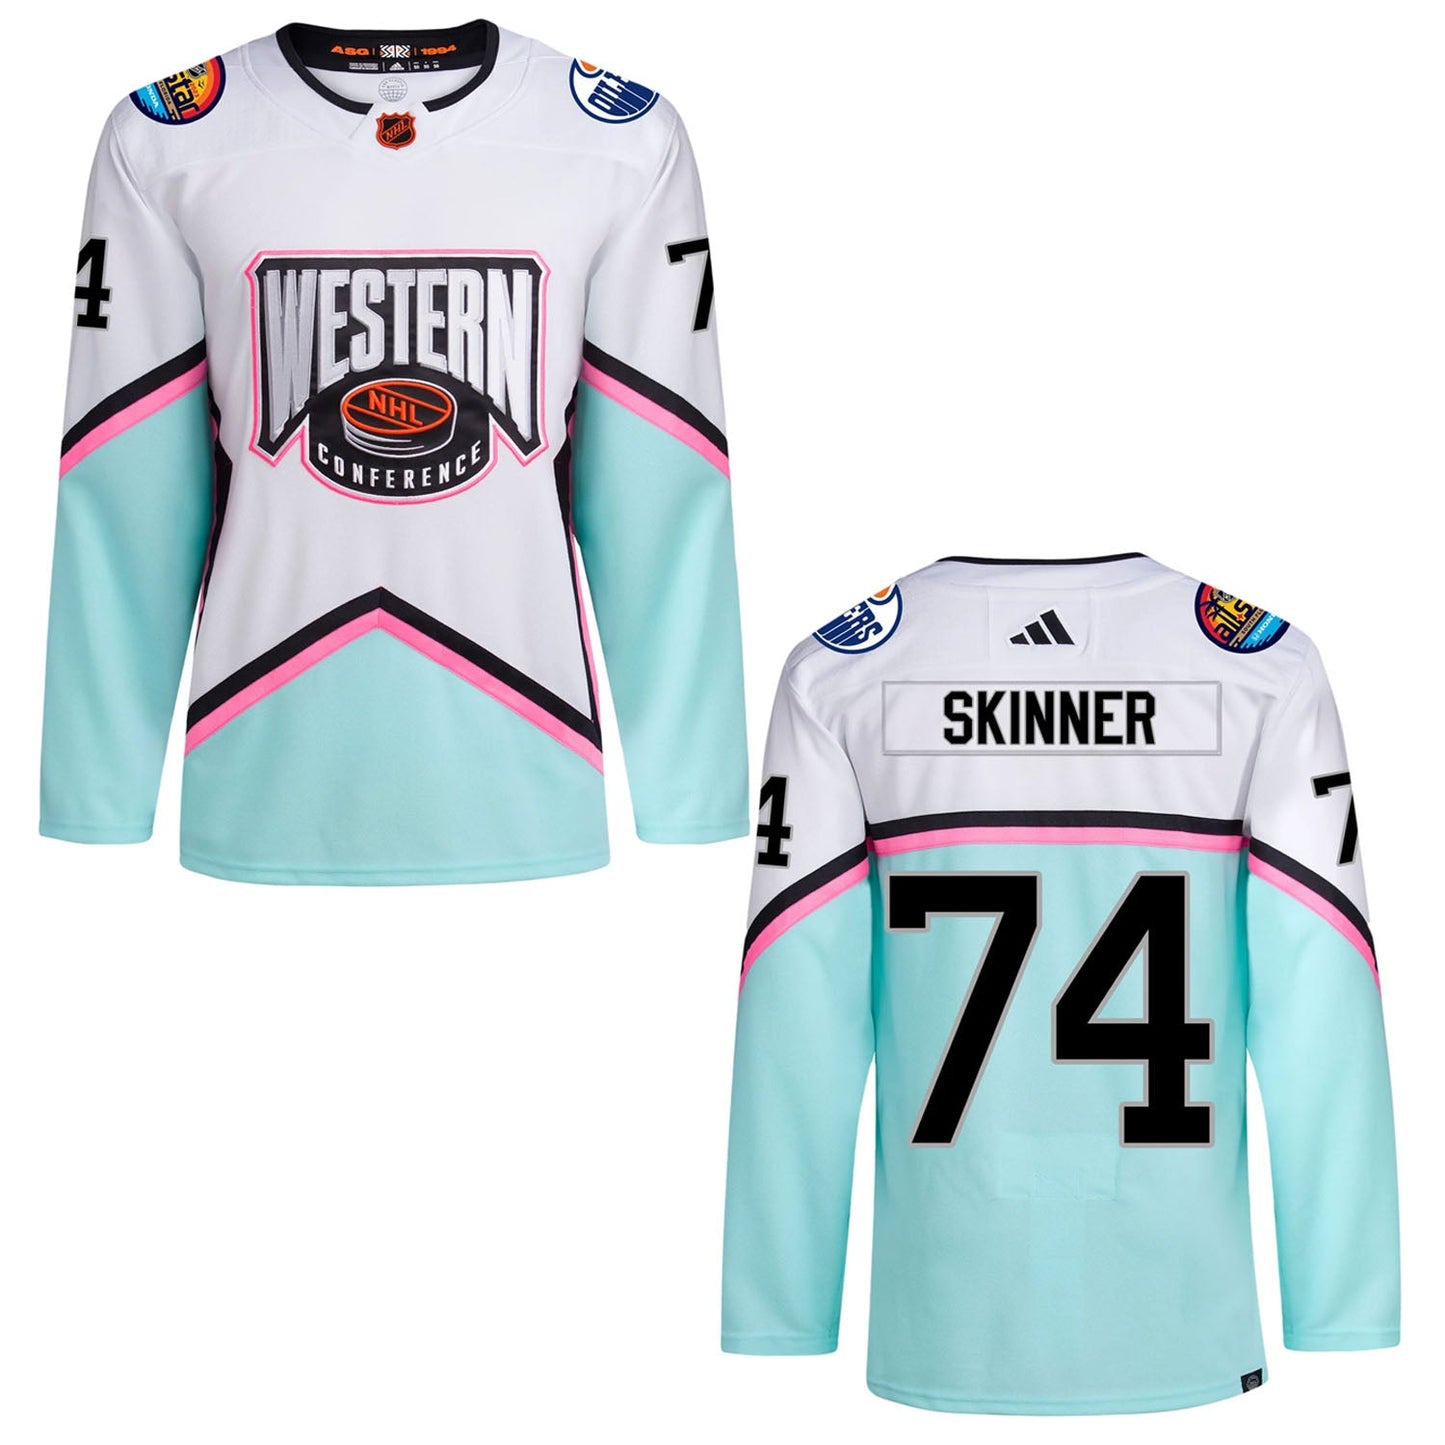 NHL Stuart Skinner Western All Star 74 Jersey